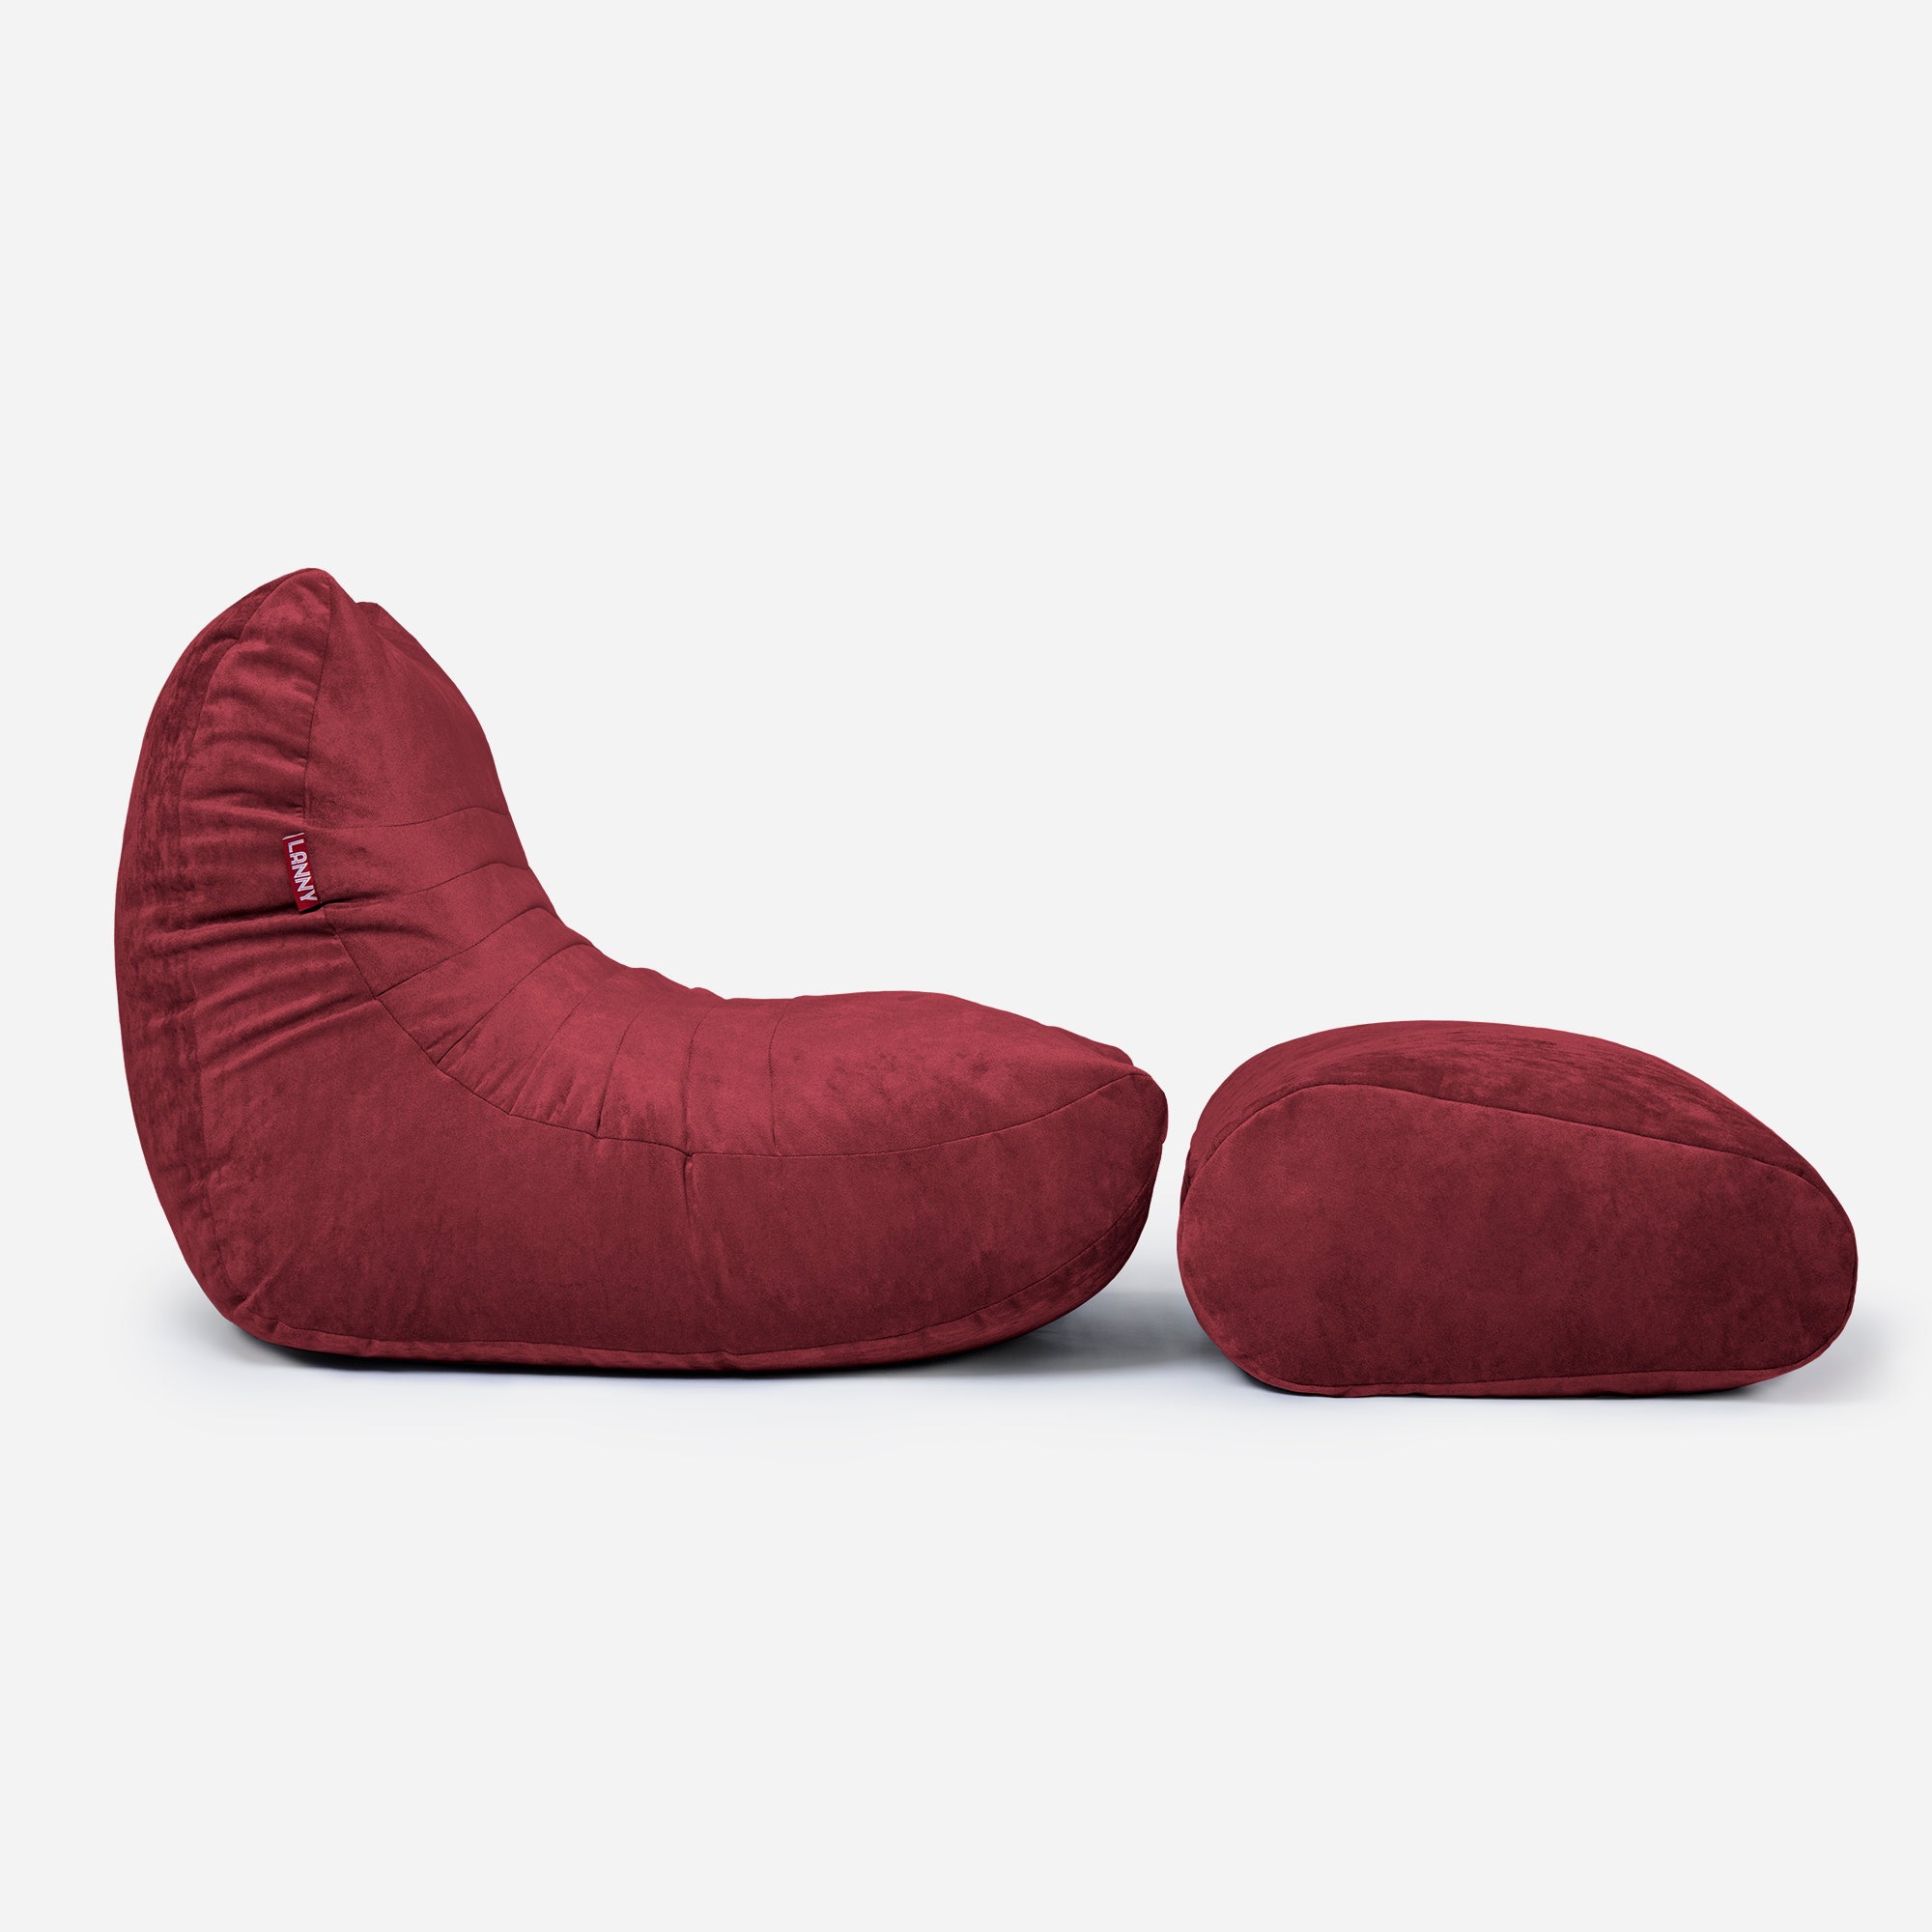 Curvy Aldo Red Bean Bag Chair